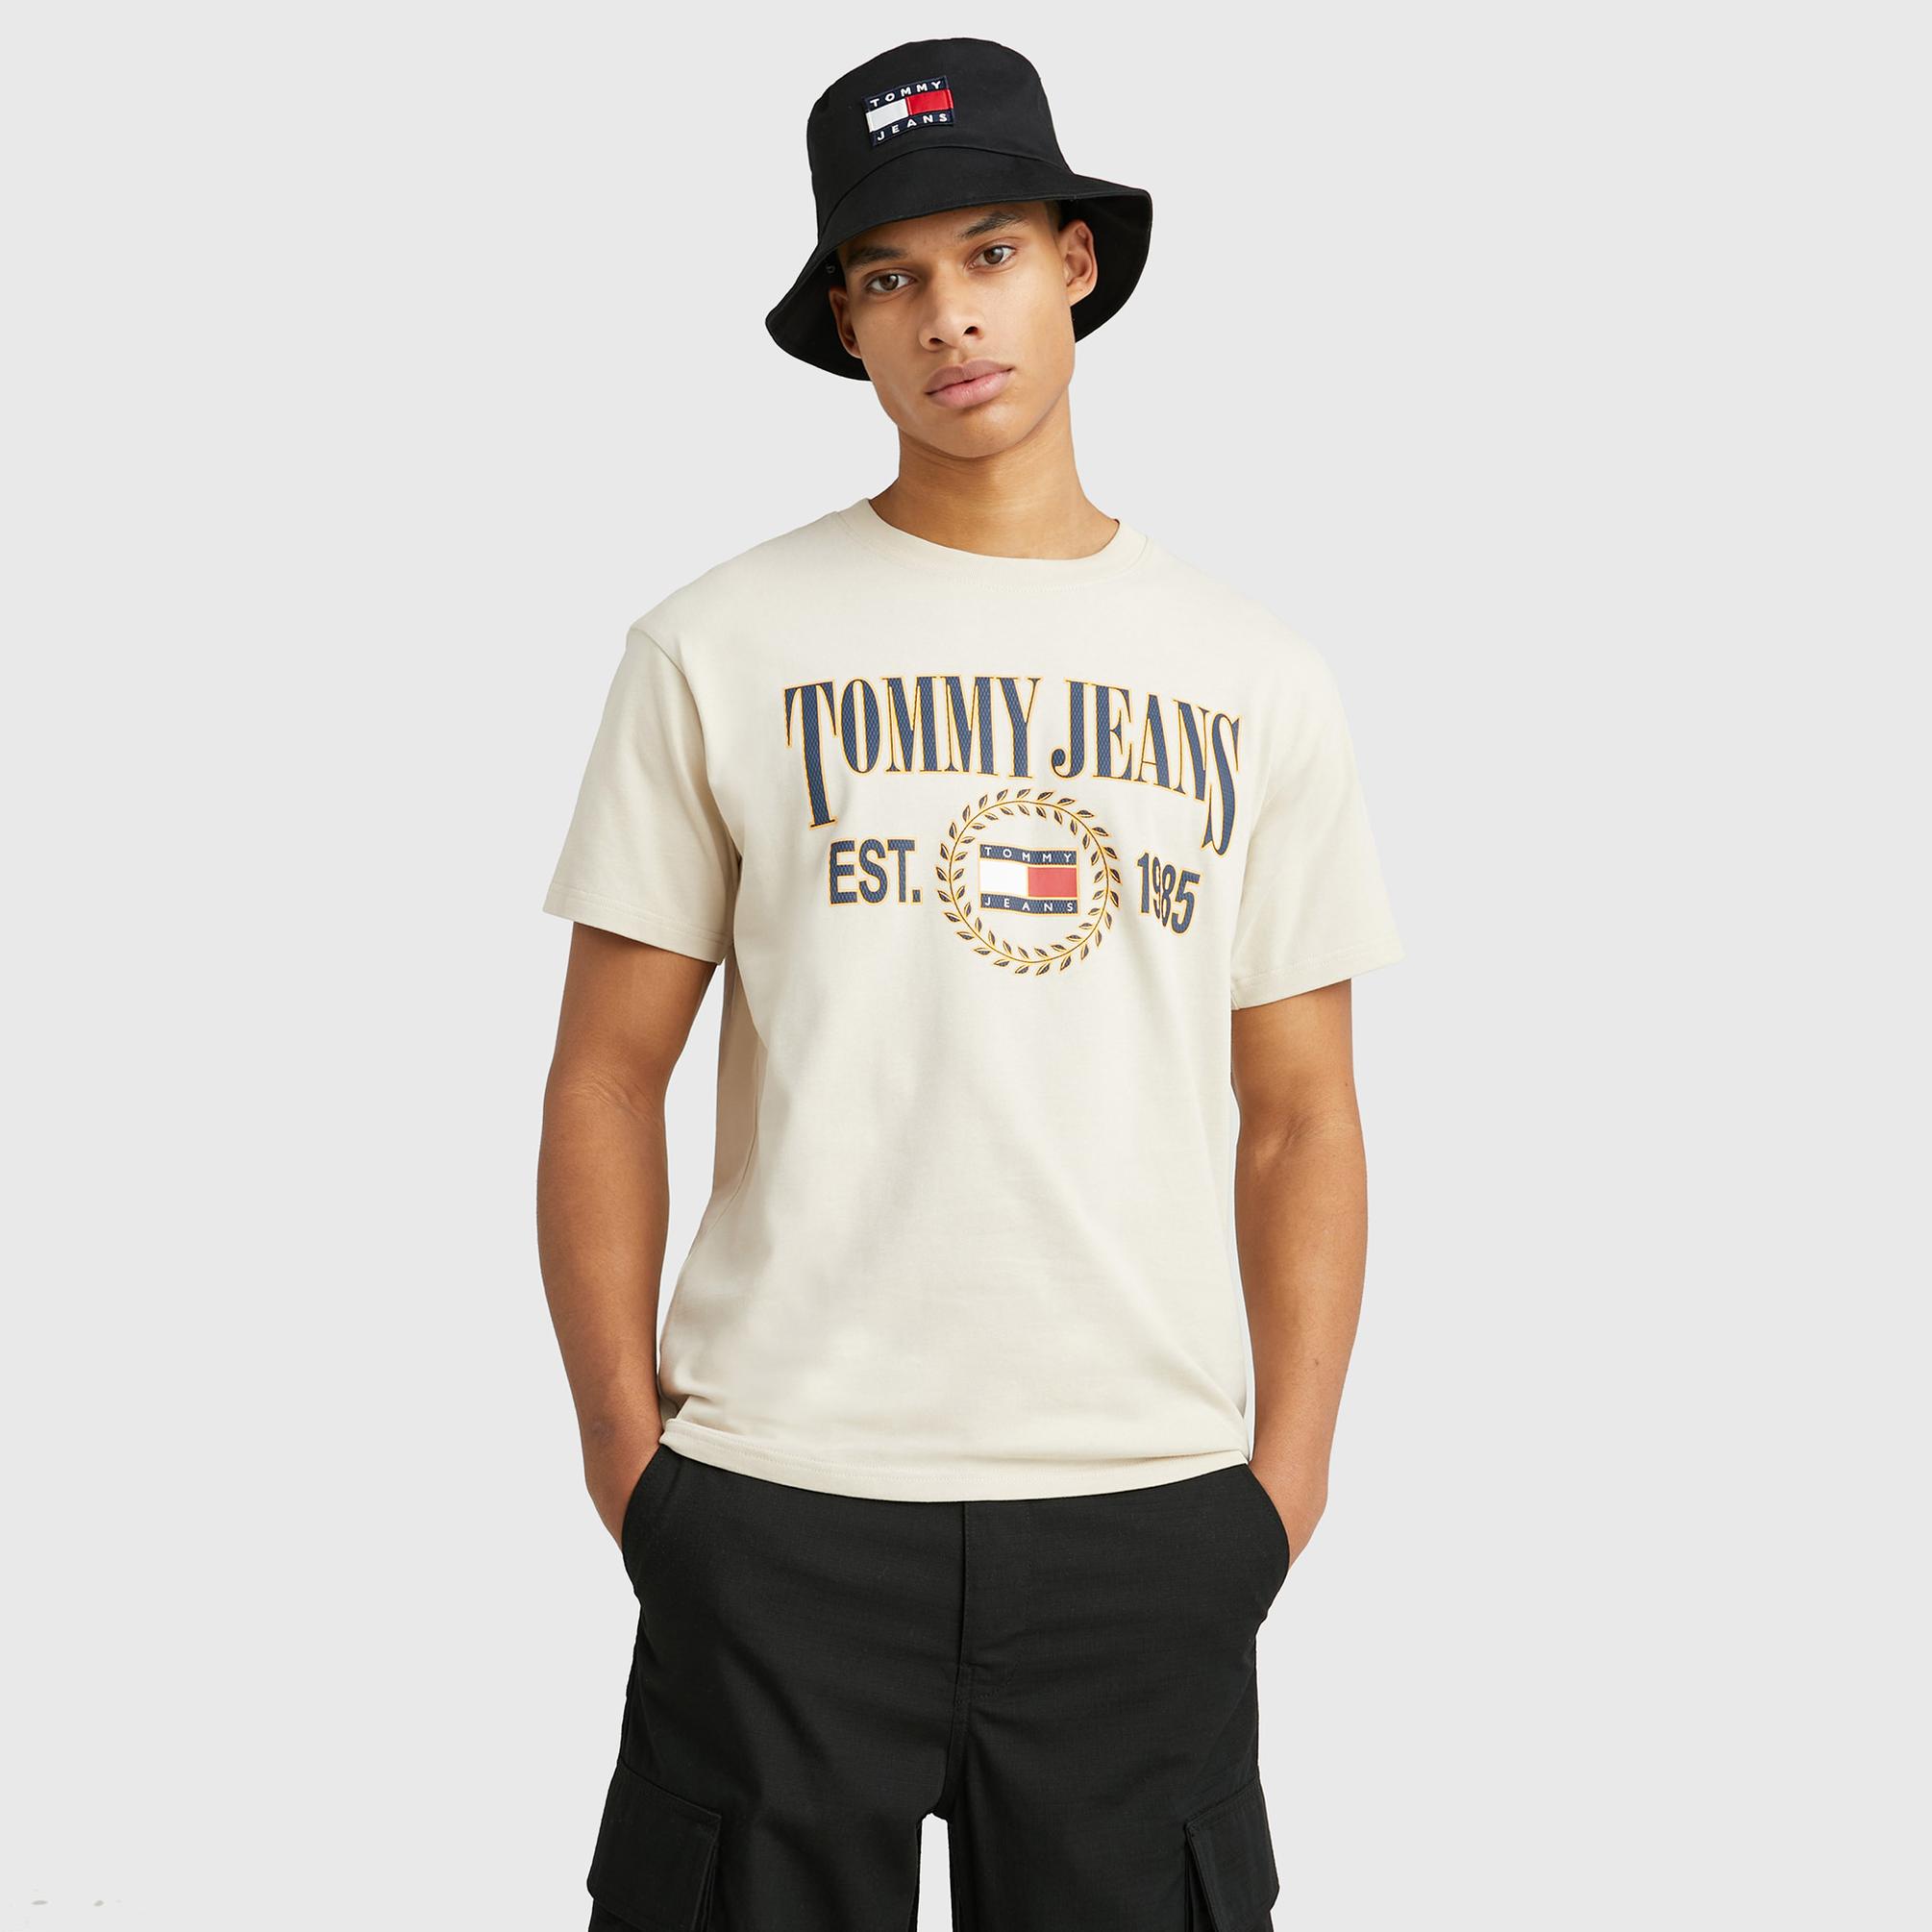  Tommy Jeans Rlx Luxe 2 Erkek Bej T-shirt